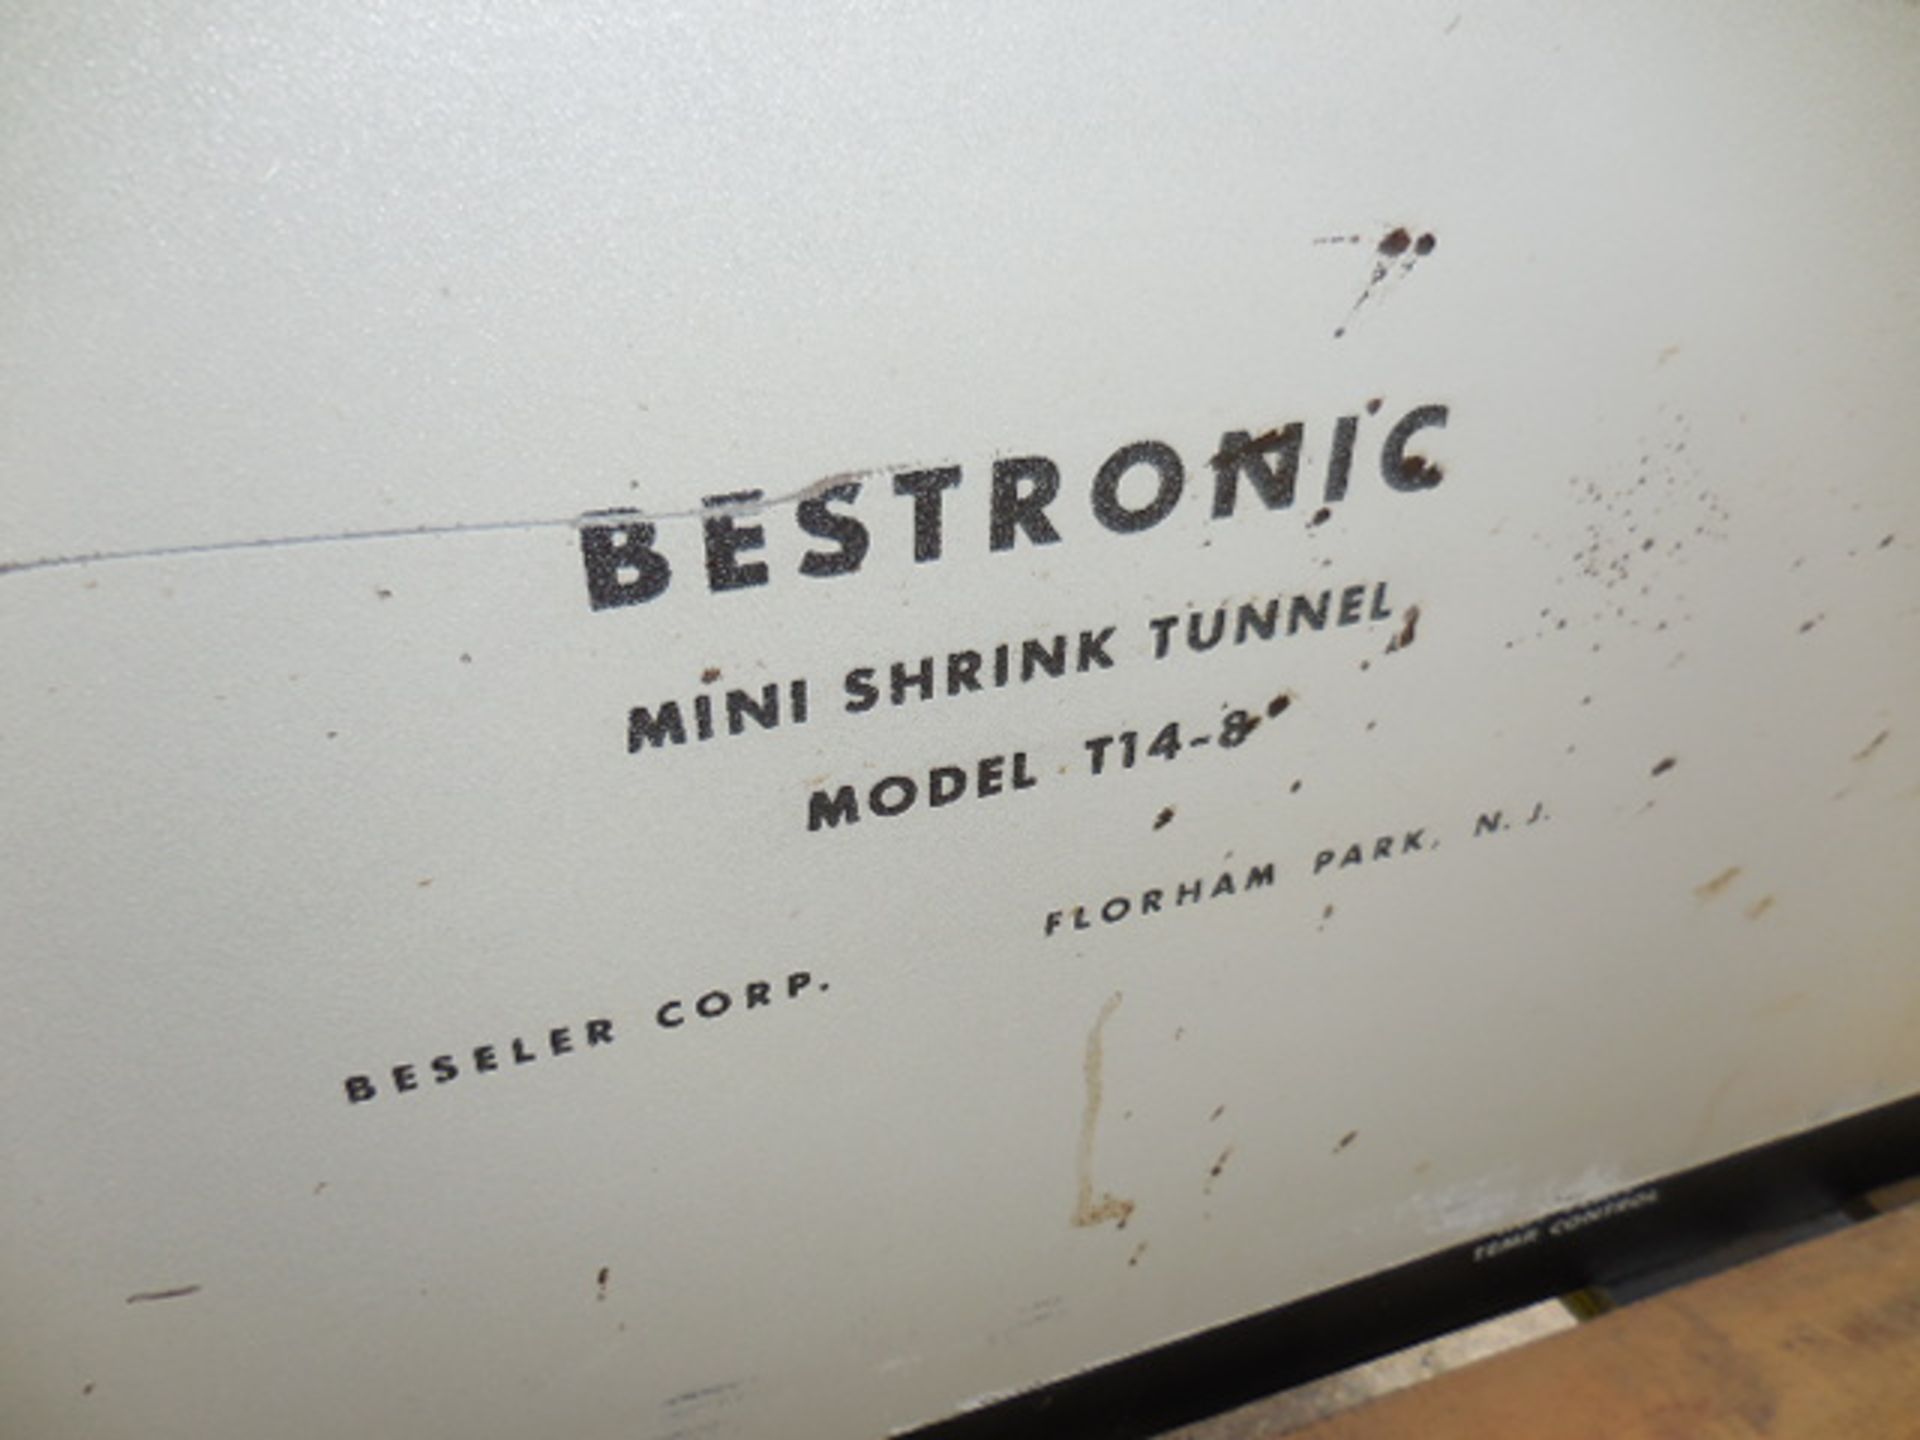 Bestronic Mini Shrink Tunnel, Beseler Corp., Model T14-8